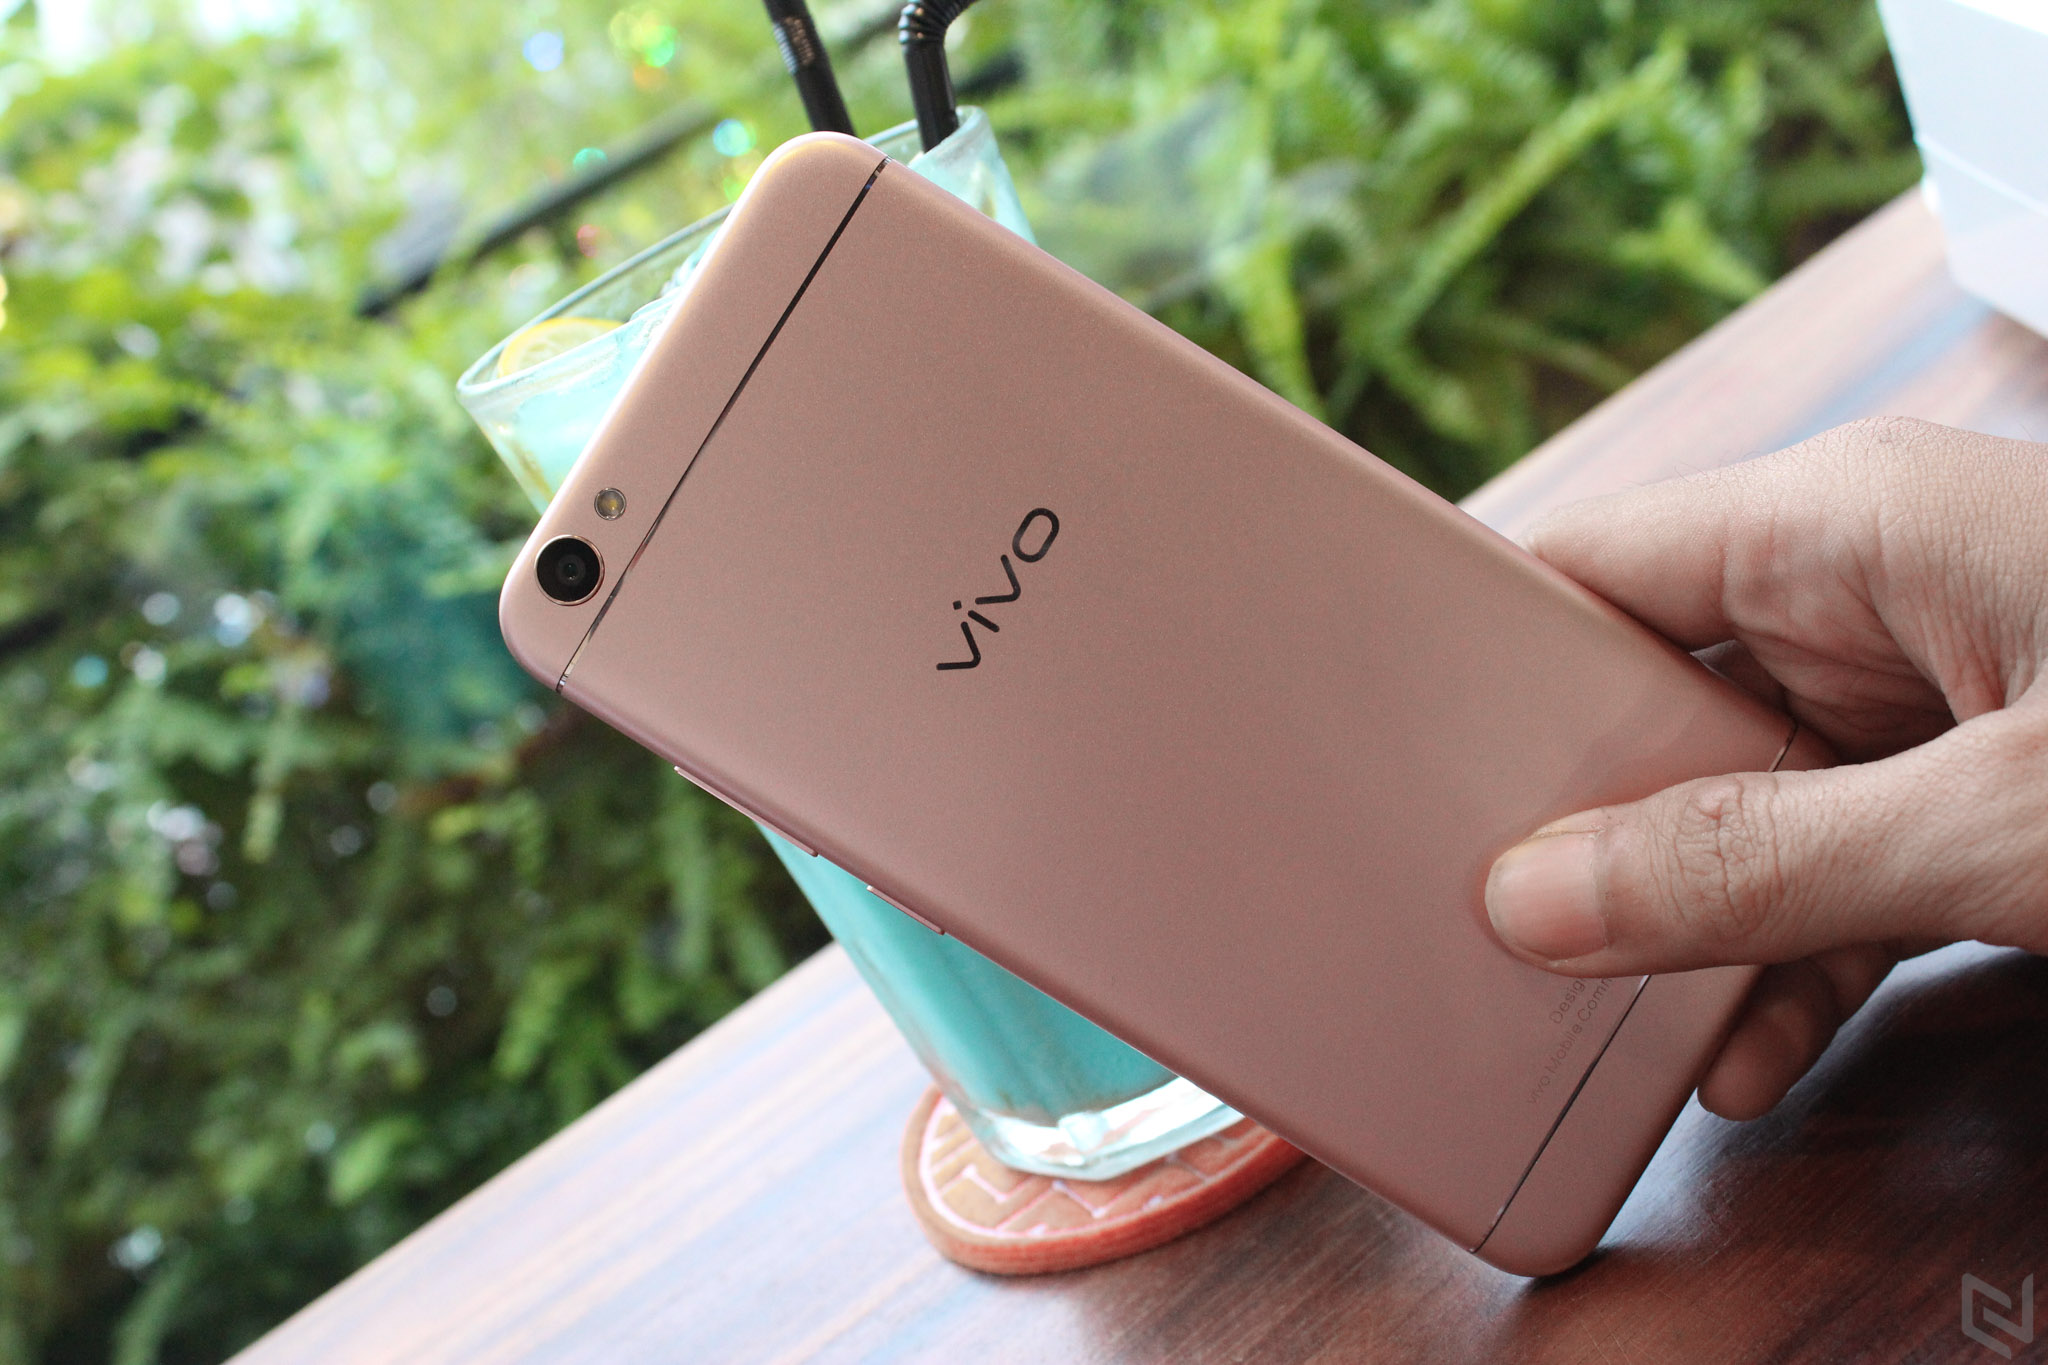 Trên tay Vivo V5: Camera Selfie 20MP có flash hỗ trợ, chip âm thanh chất lượng cao